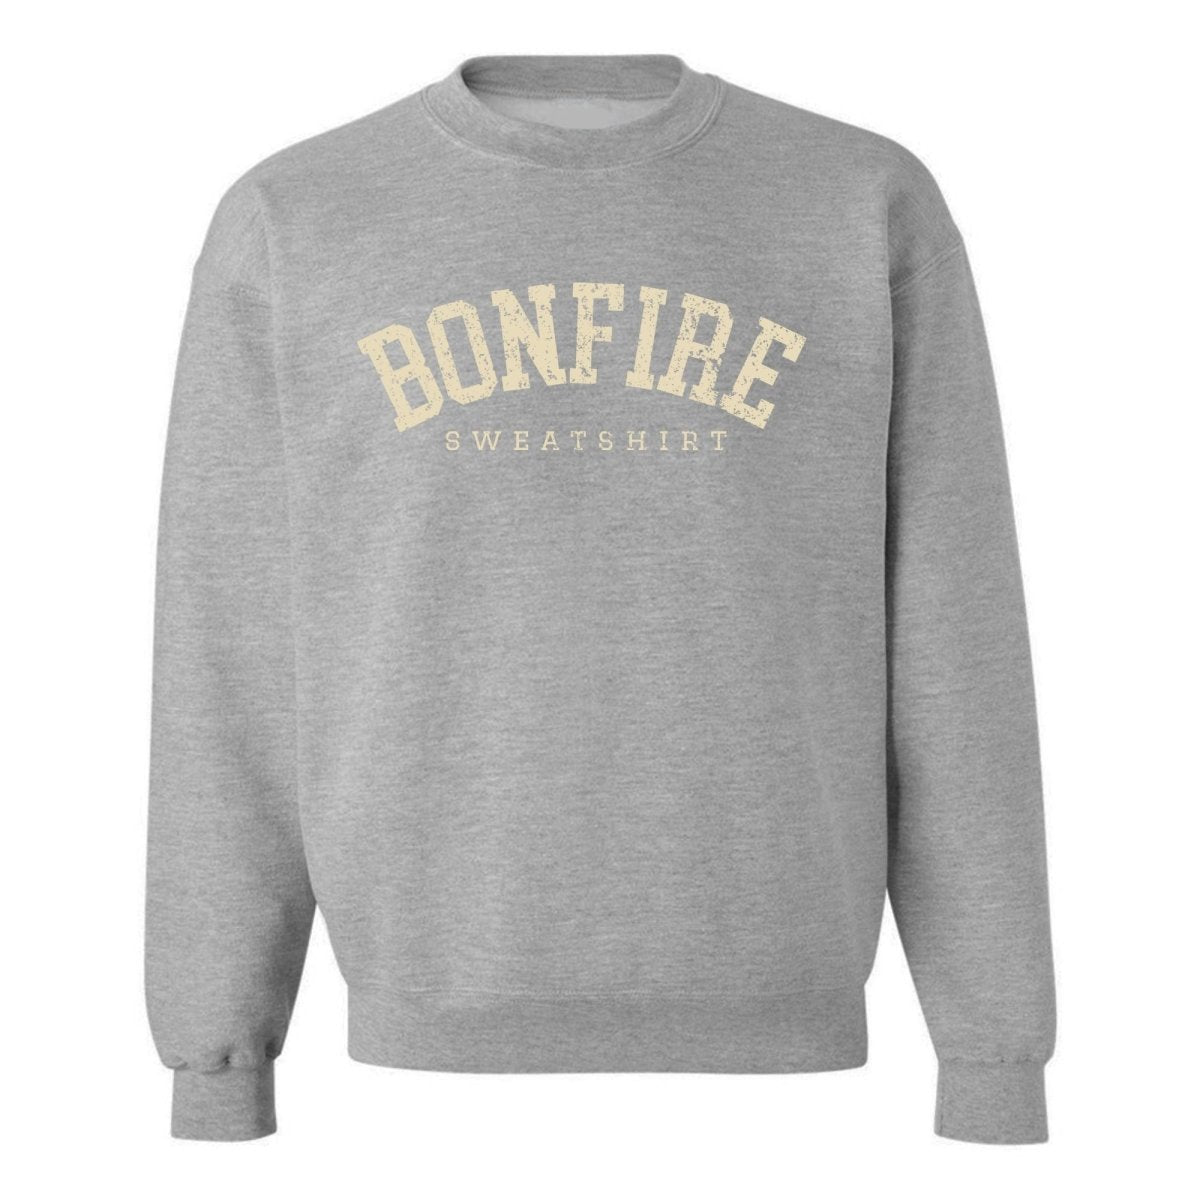 'Bonfire Sweatshirt' Crewneck Sweatshirt - United Monograms